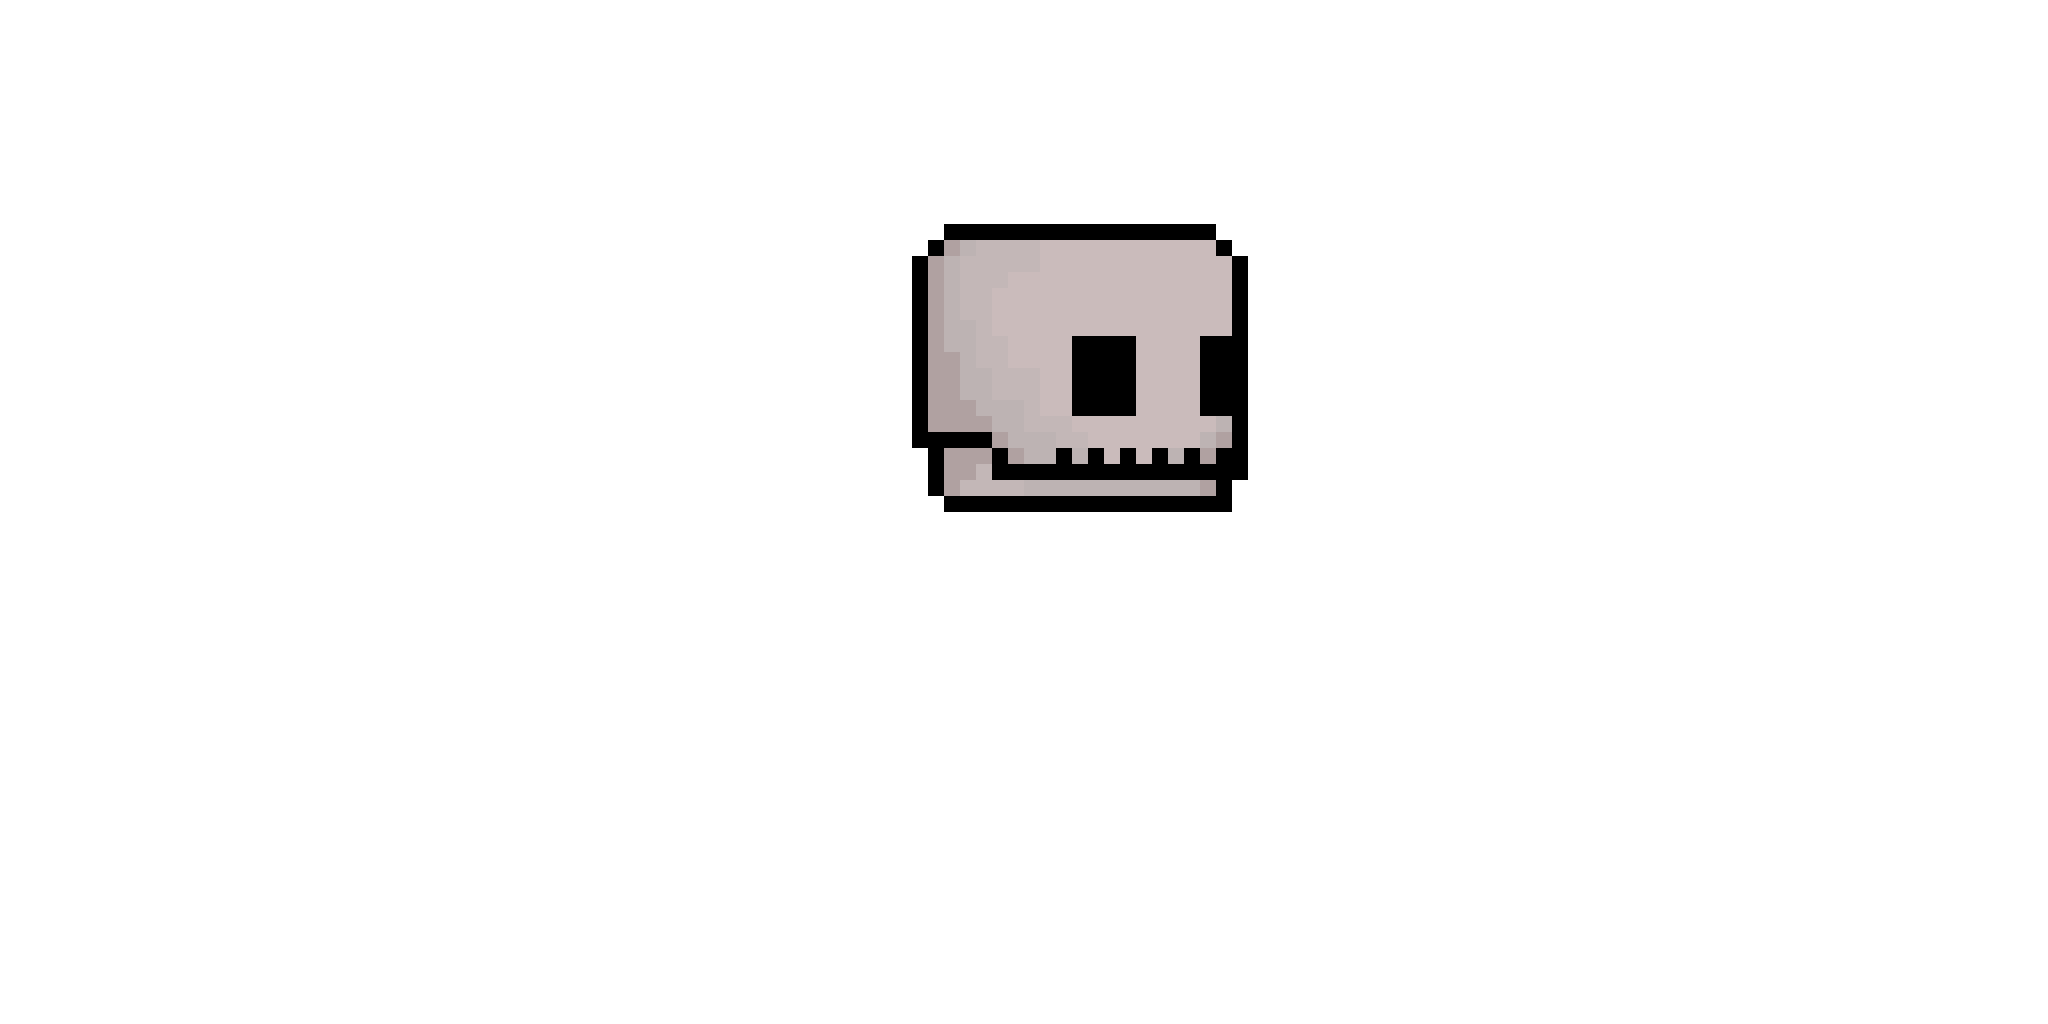 skull